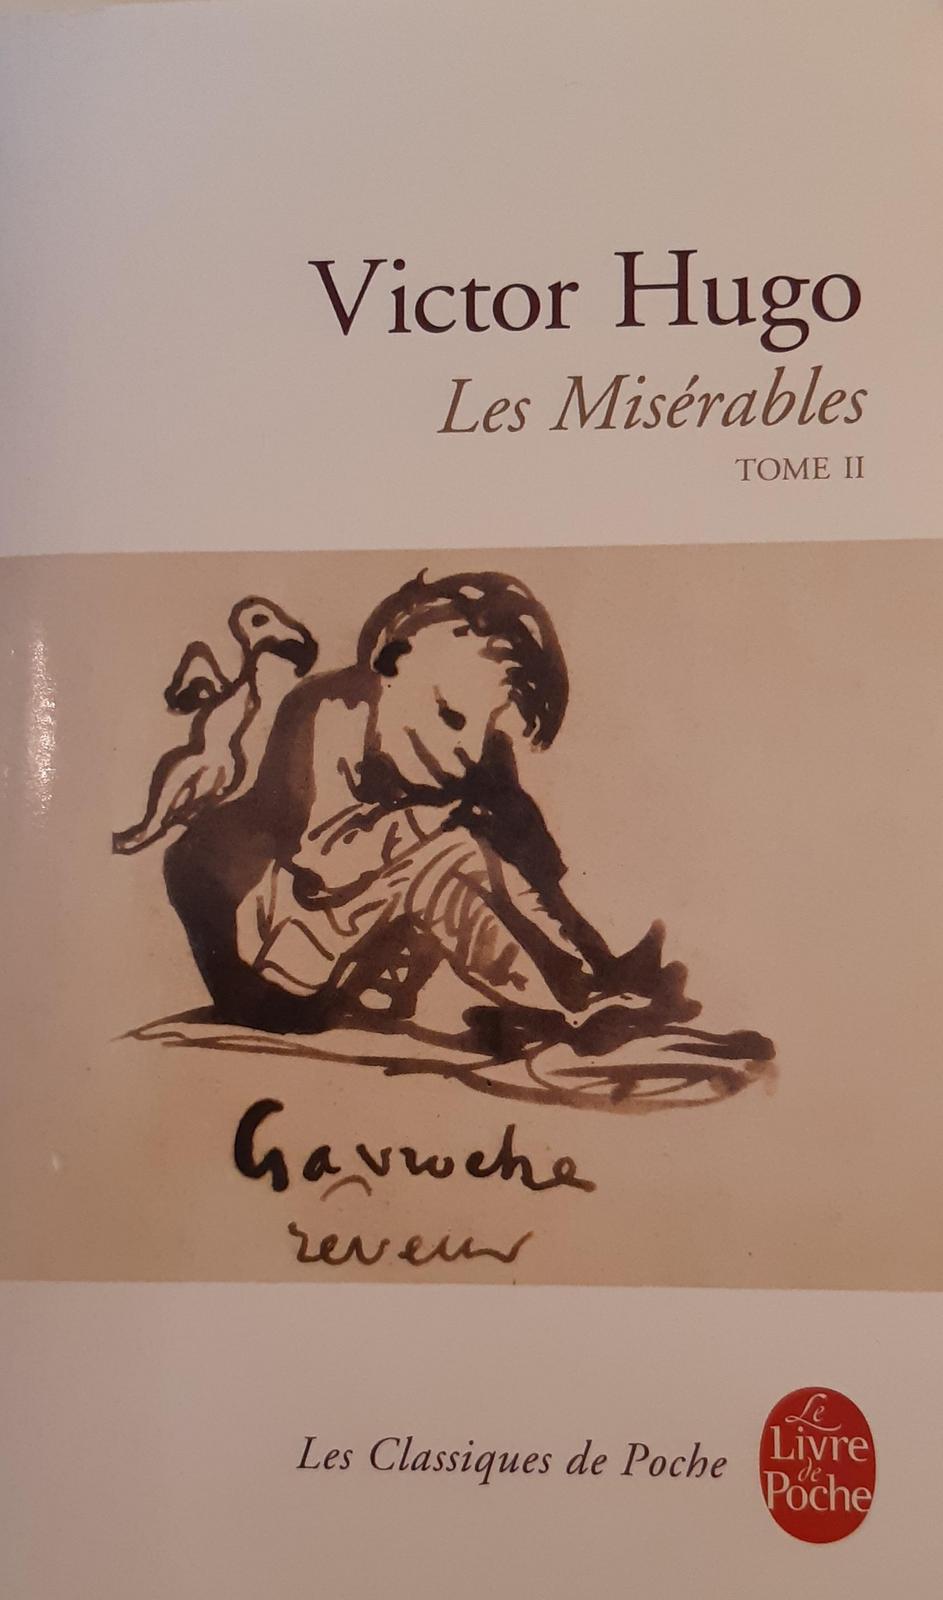 Les Misérables (French language, 1998)